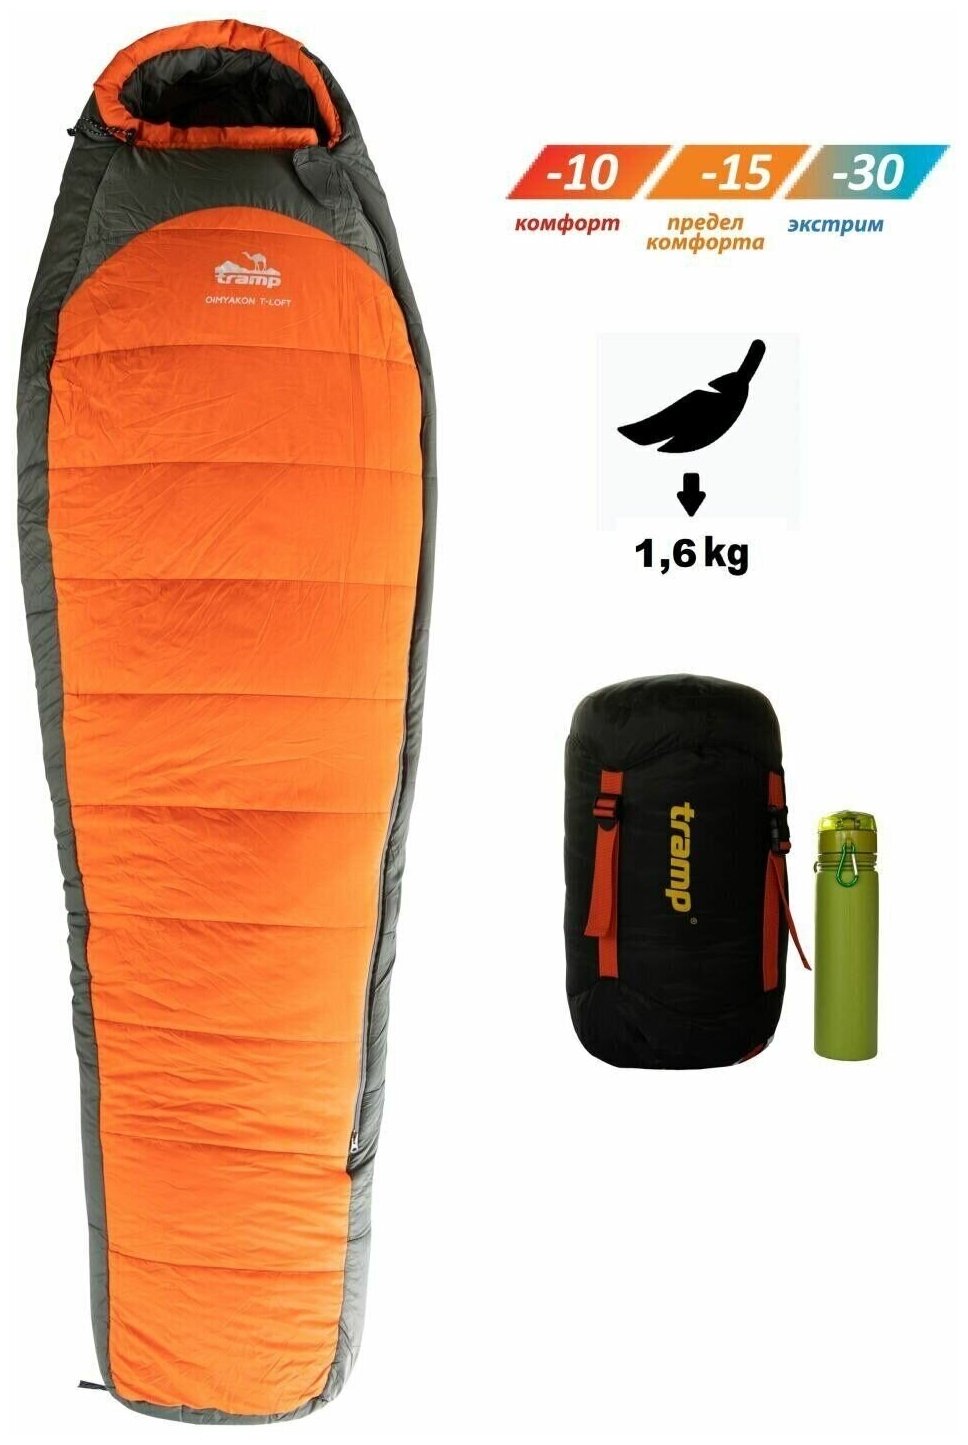 Tramp мешок спальный Oimyakon T-Loft Compact оранжевый левый